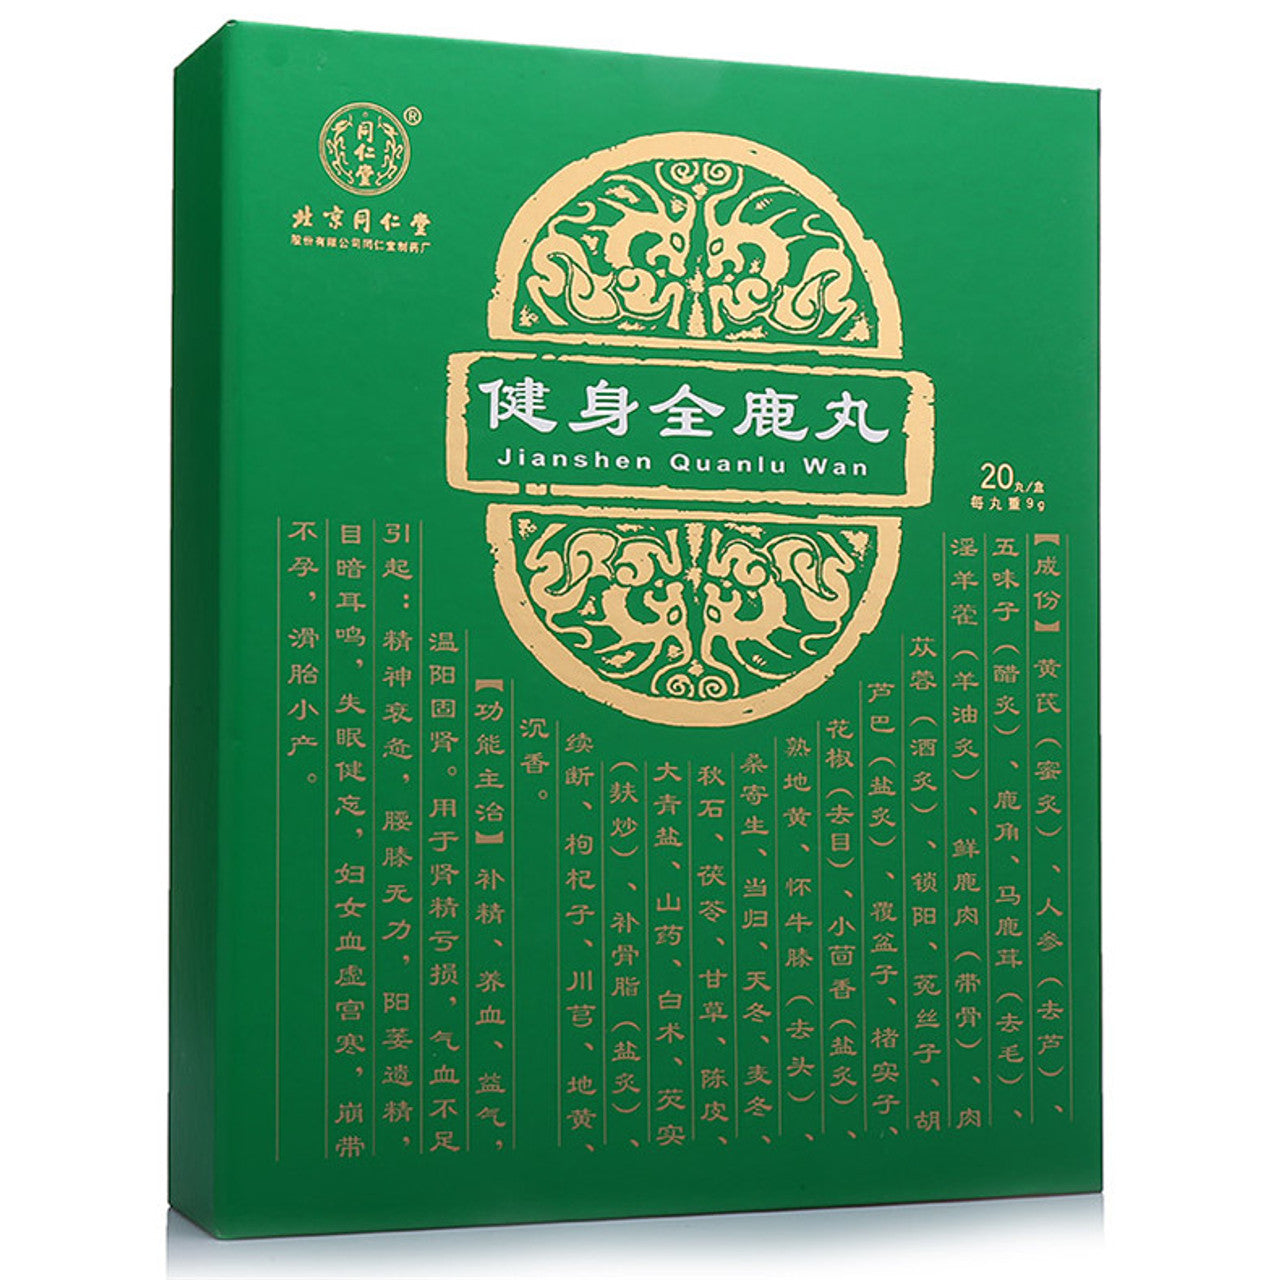 China Herb. Jianshen Quanlu Wan or Jianshen Quanlu Pills or Jian Shen Quan Lu Wan for Nourishing essence, nourishing blood, replenishing qi, warming Yang and strengthening essence